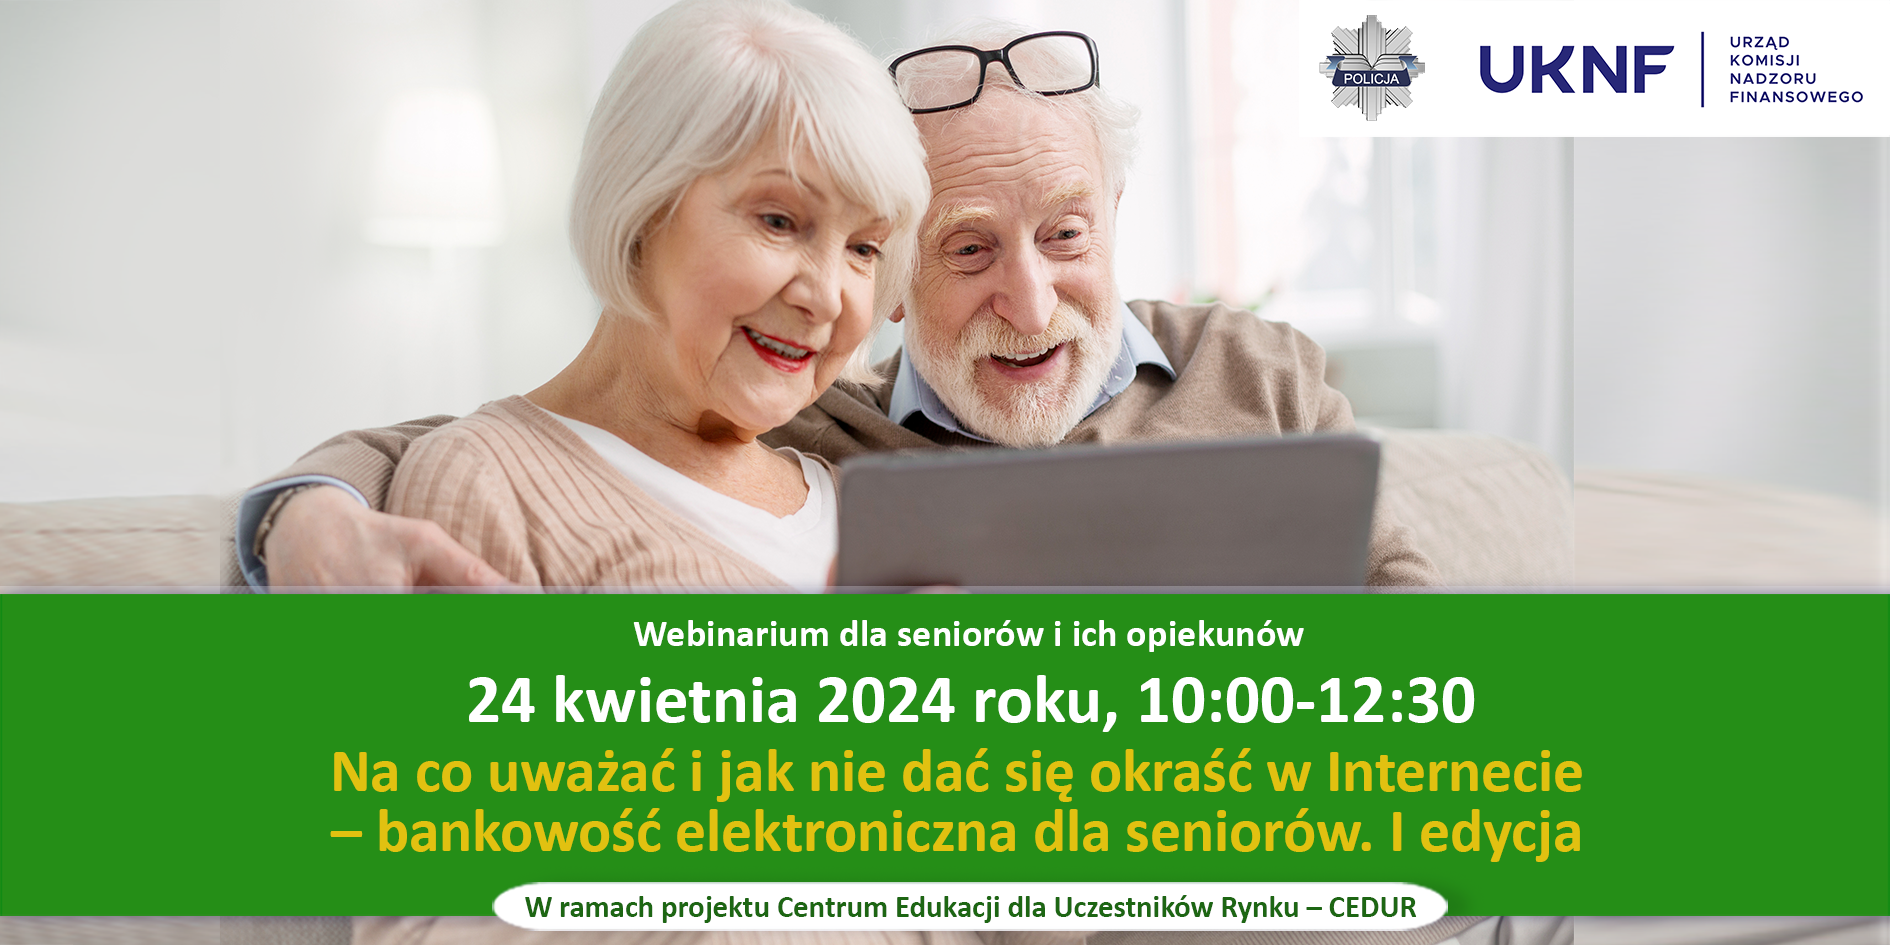 Webinarium CEDUR „Na co uważać i jak nie dać się okraść w Internecie – bankowość elektroniczna dla seniorów. I edycja”, 24 kwietnia 2024 roku